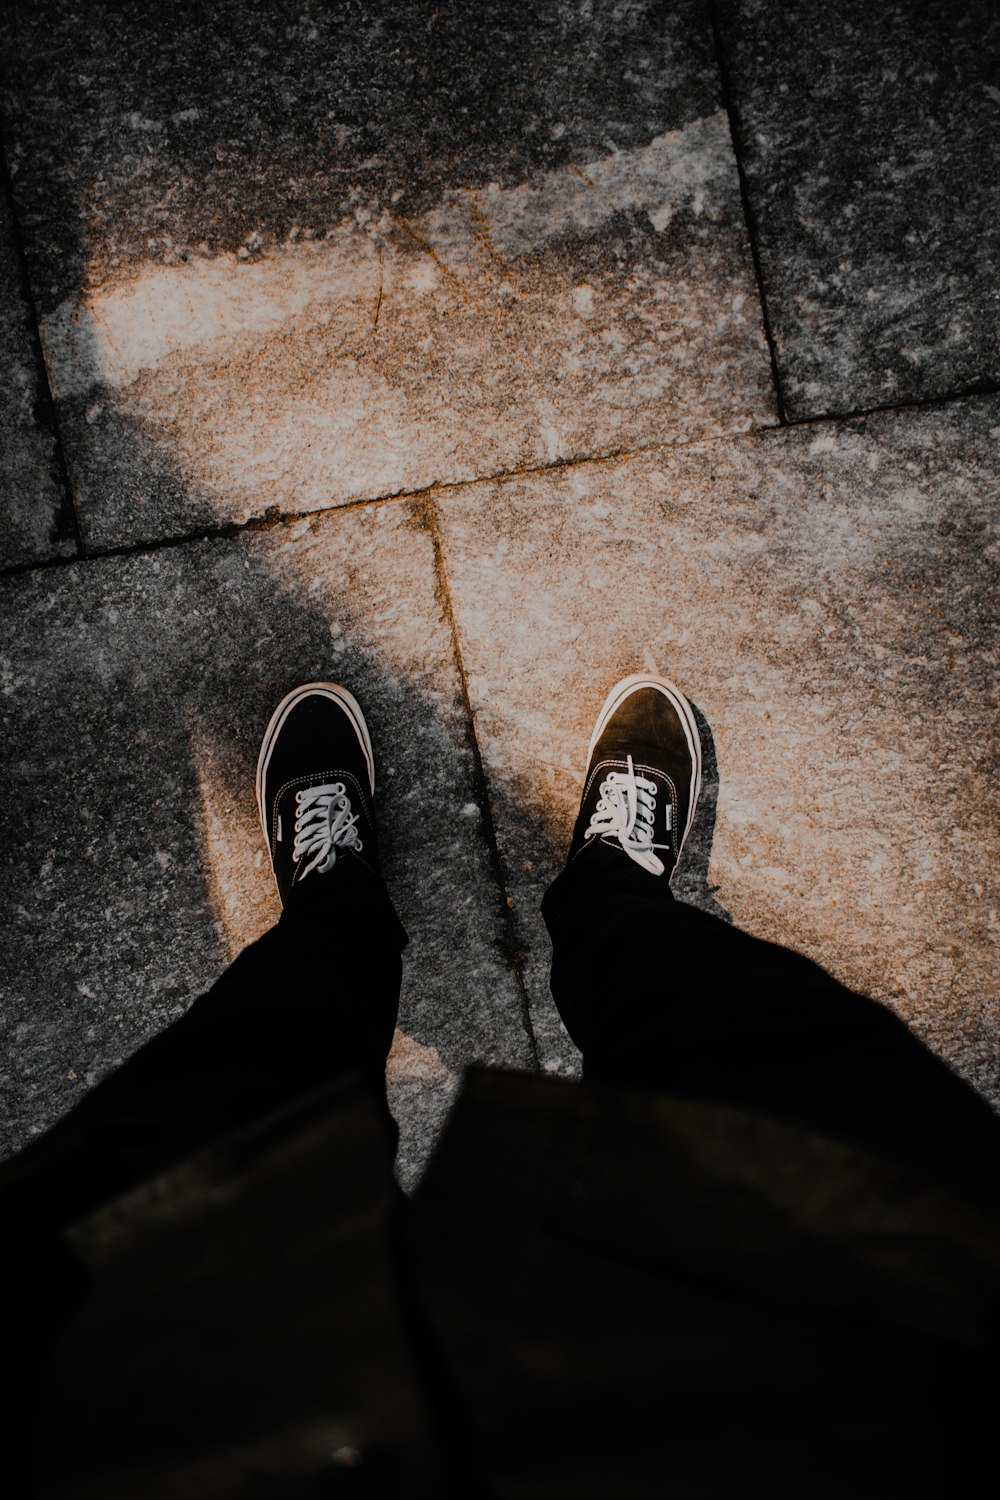 Una persona parada en una acera con los zapatos puestos